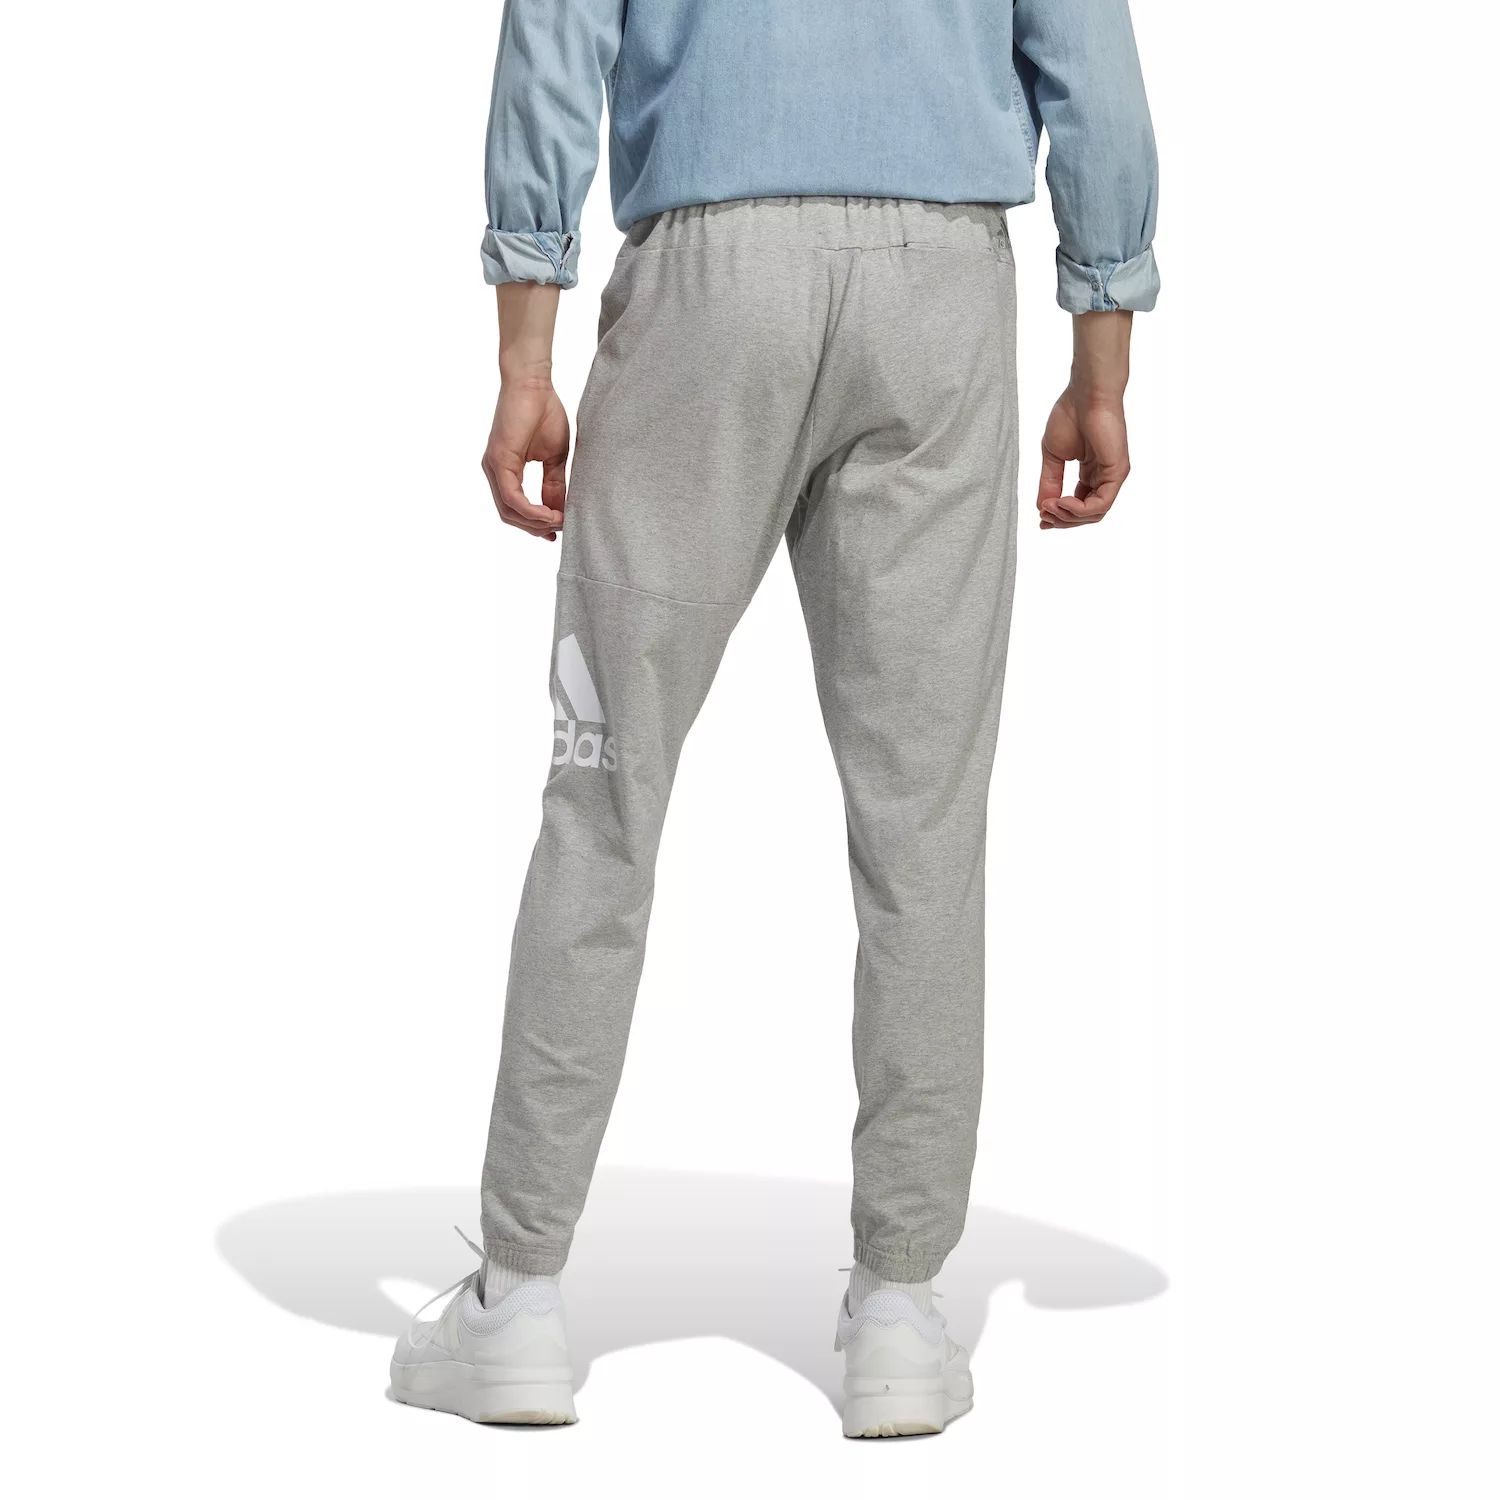 Зауженные спортивные брюки Big & Tall Essentials adidas светоотражающая крышка smartwool цвет medium gray heather